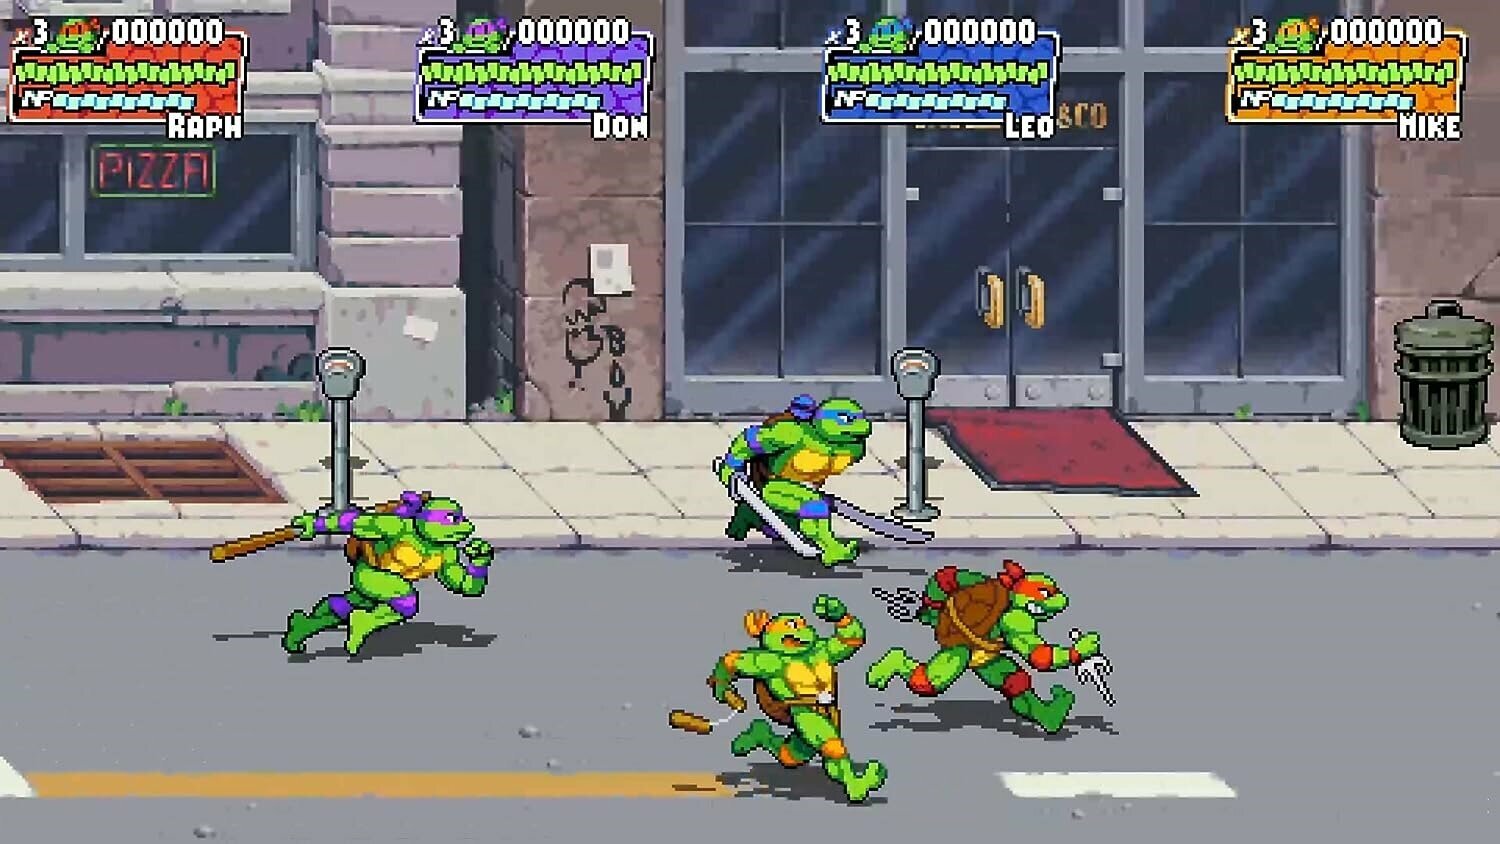 Teenage Mutant Ninja Turtles Shredder Revenge PS5